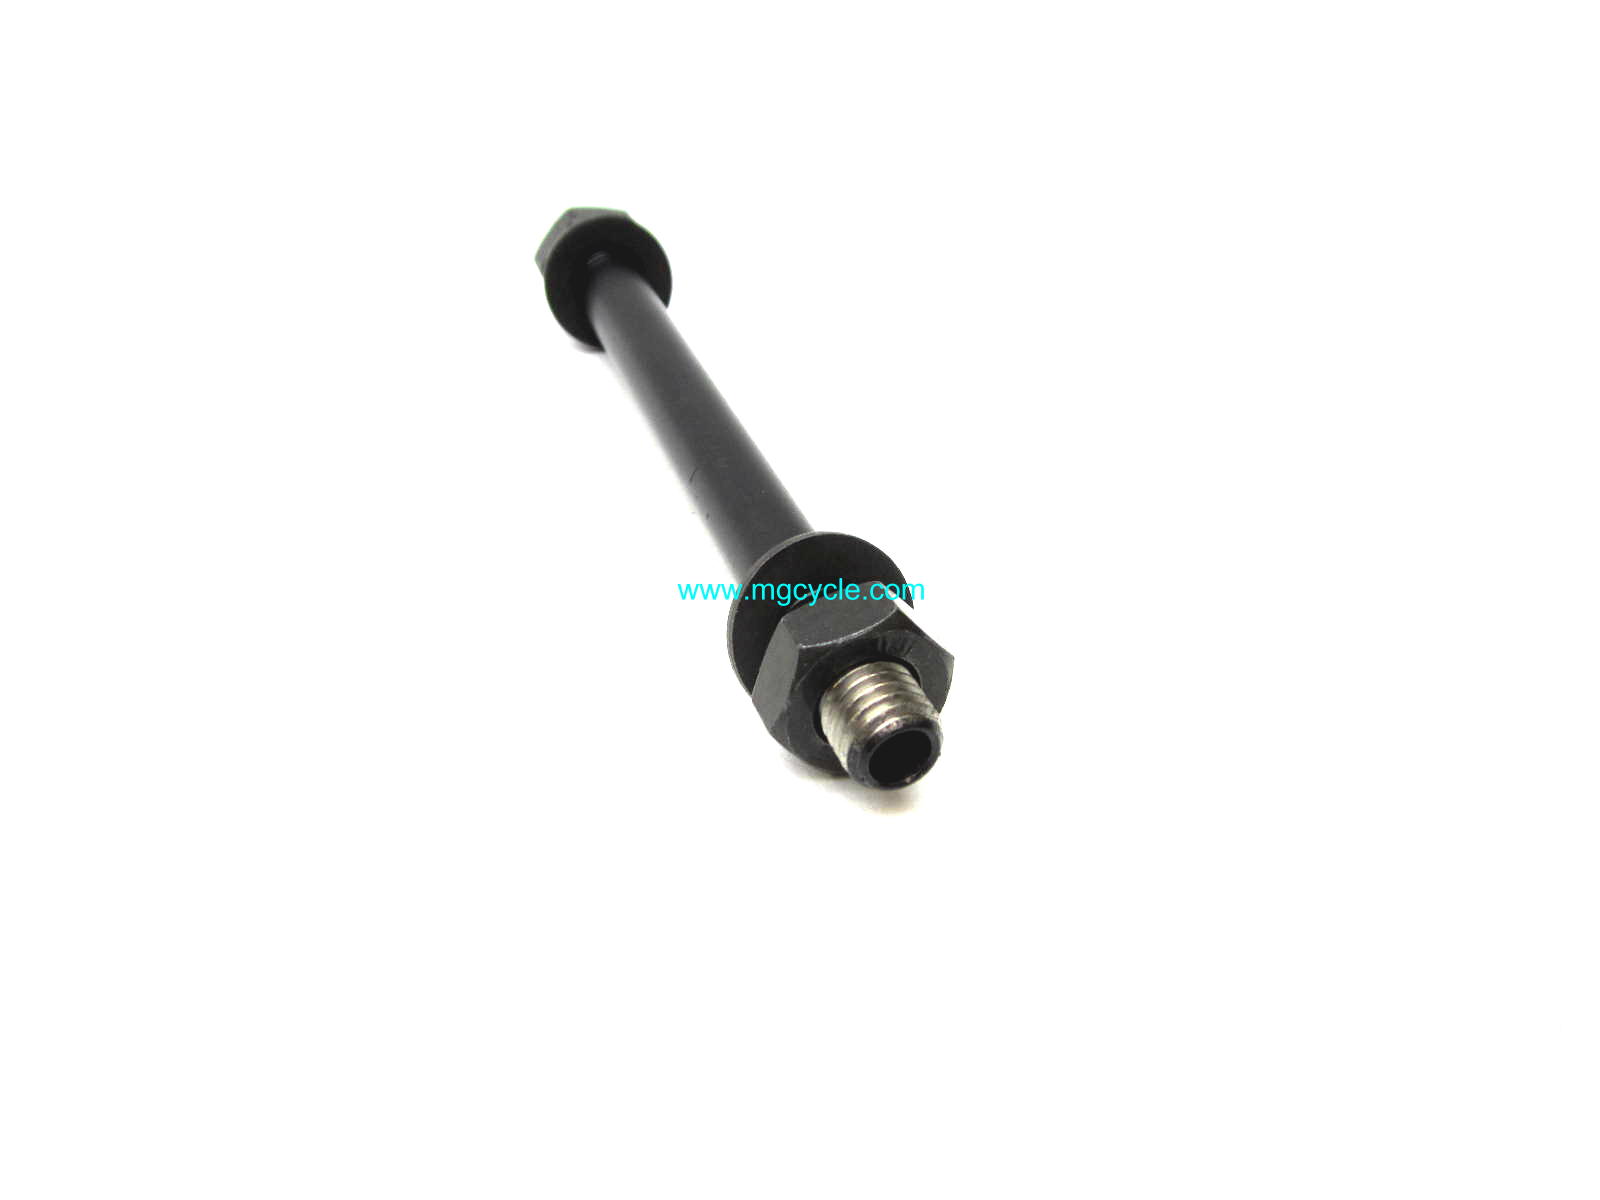 Turn signal stem for CEV black T3 G5 SP LM I/2 V50/2 - Click Image to Close